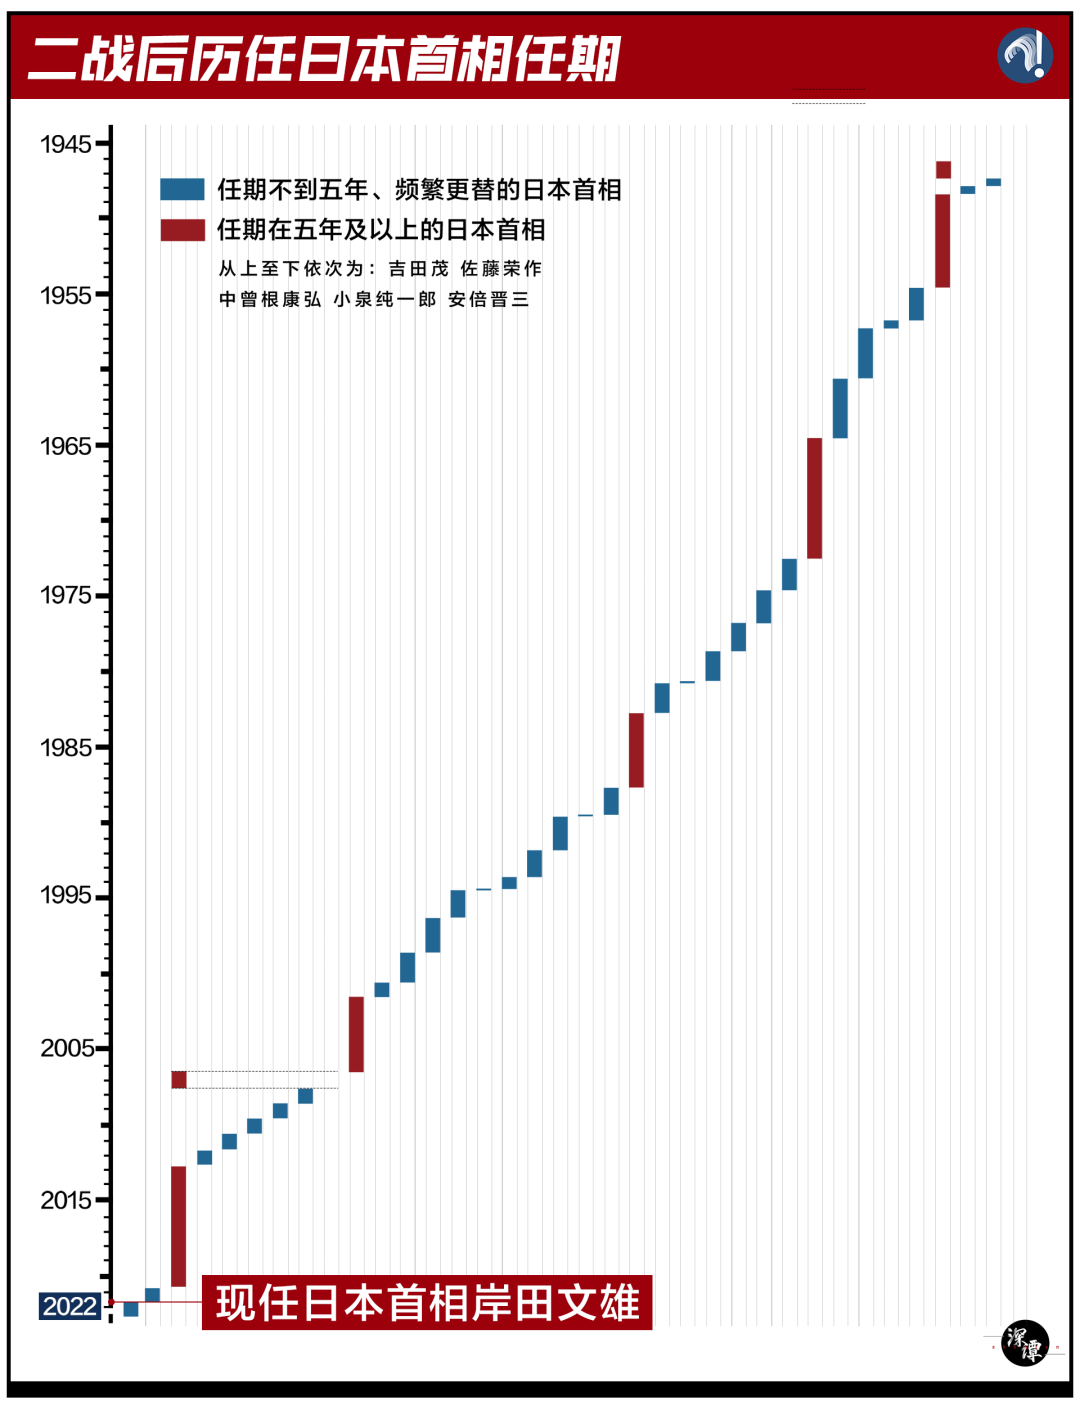 这是一张日本首相执政年限的图，红色代表较为稳定的执政周期，而蓝色代表频繁更换首相的周期。